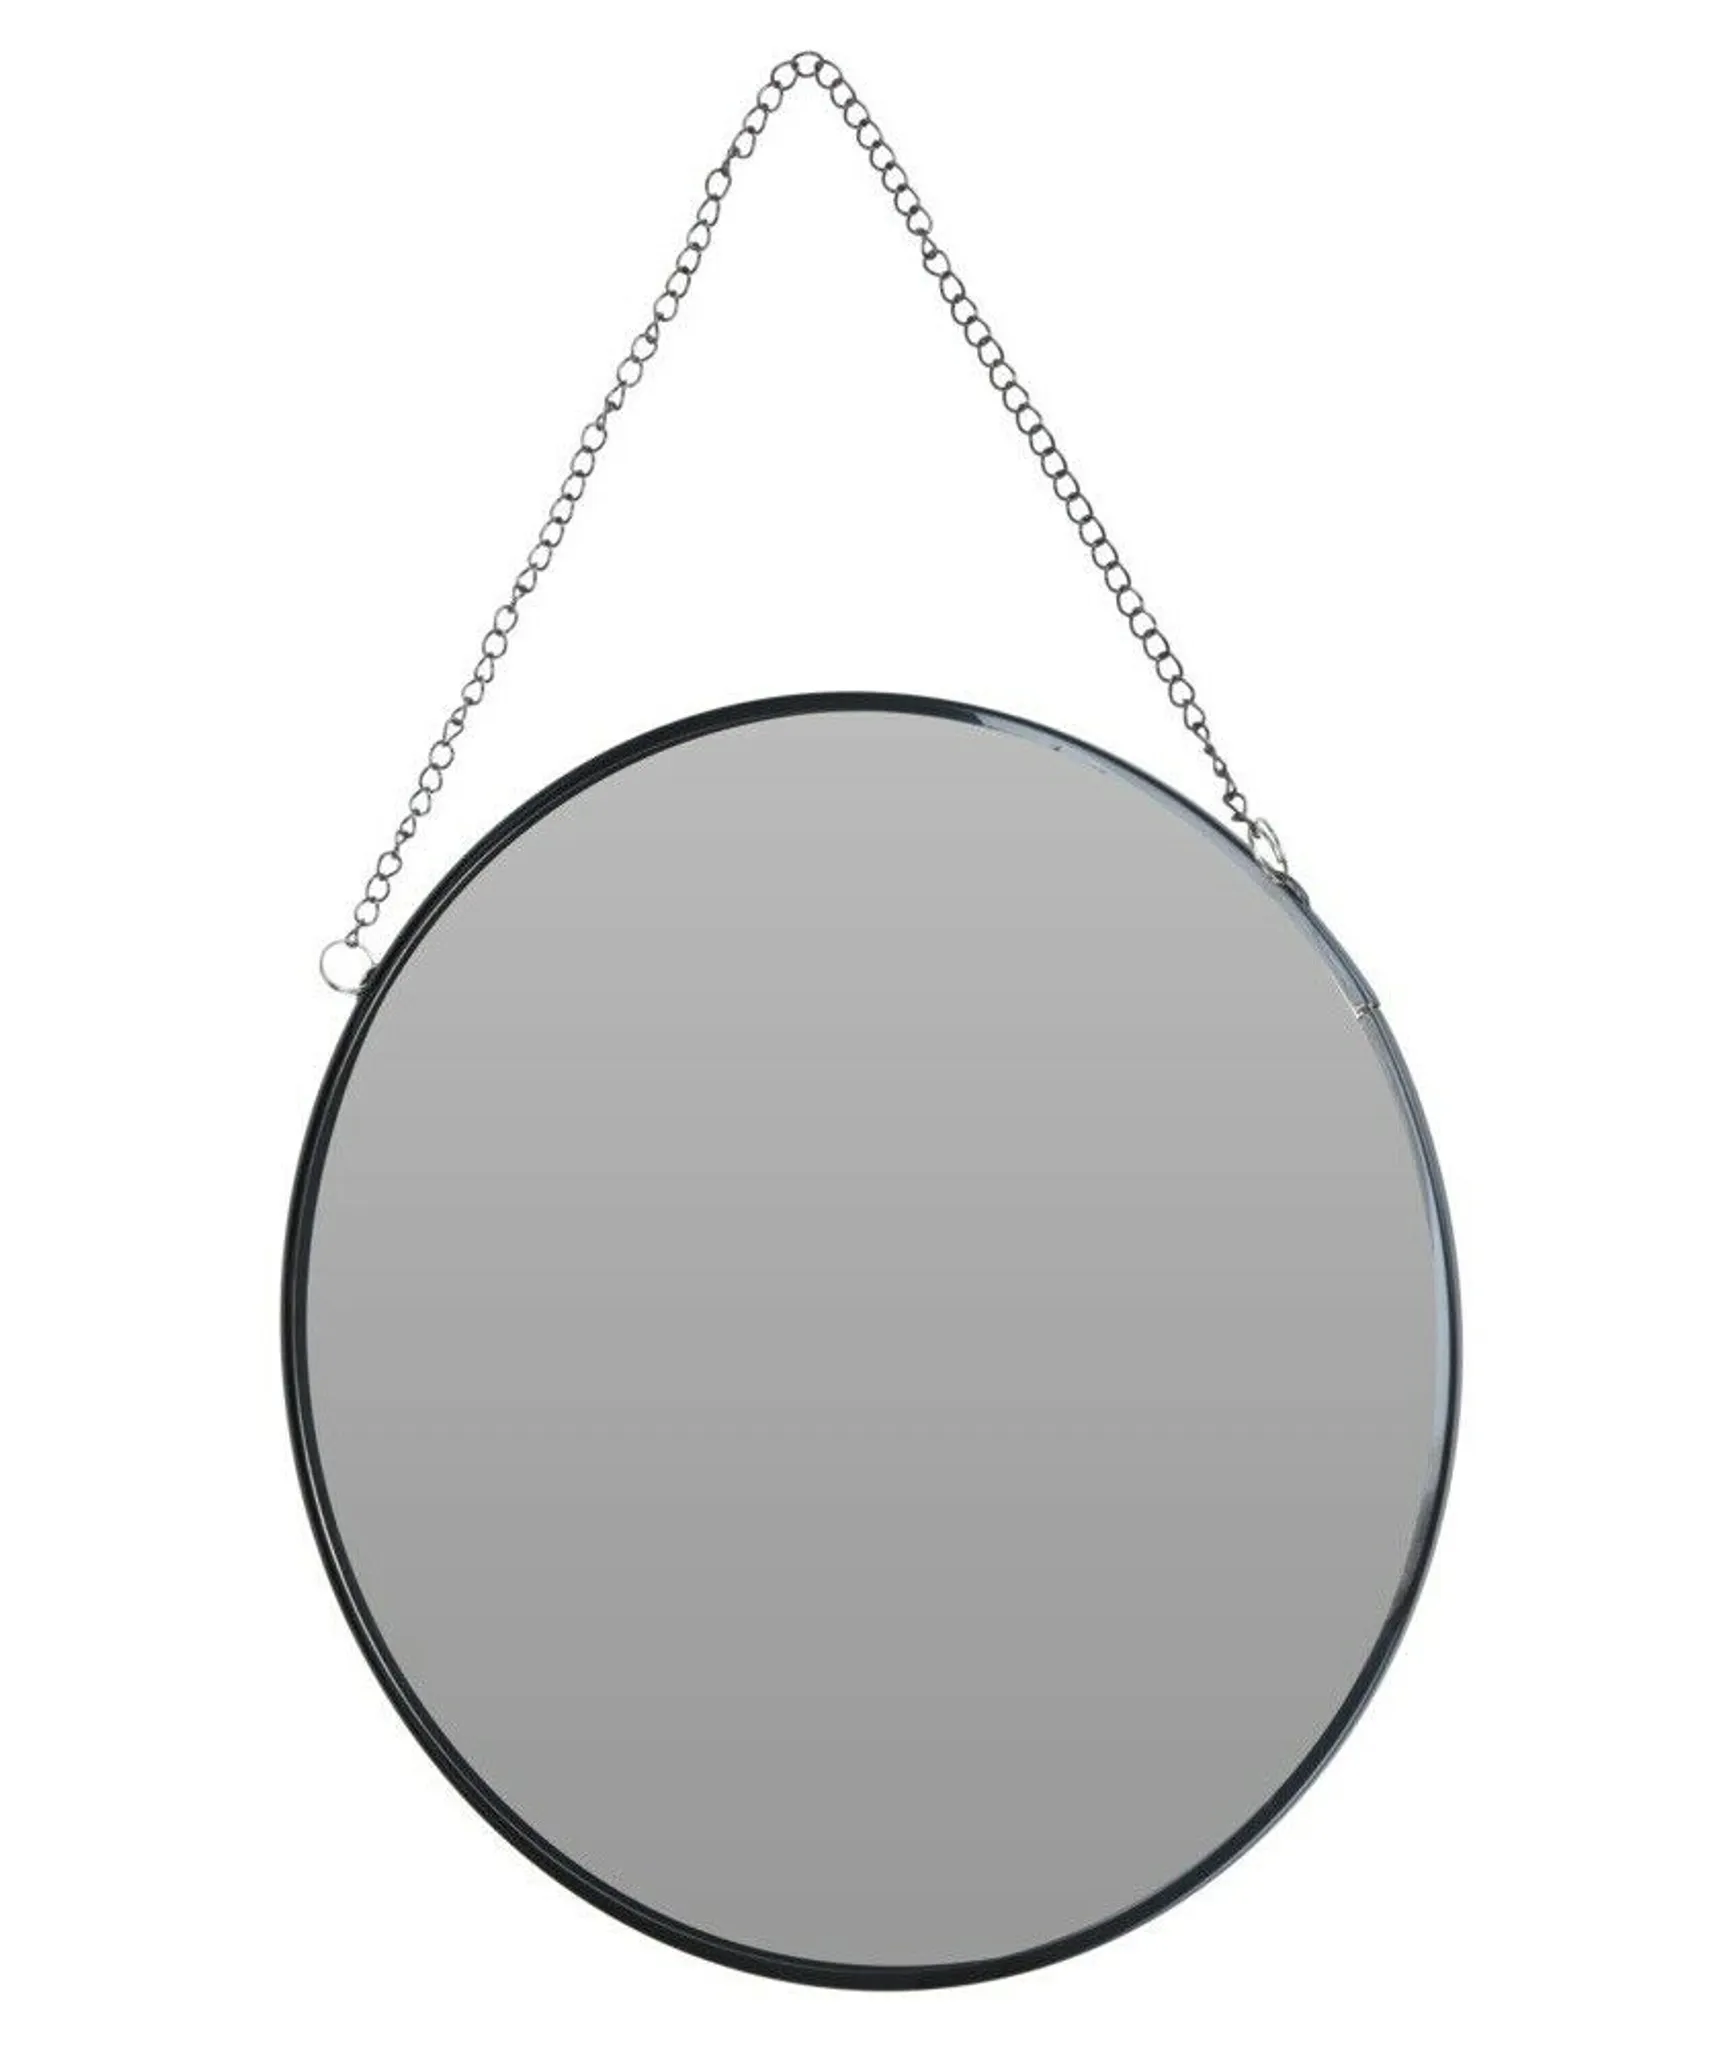  Metall Kleiner Spiegel, Desktop runder Spiegel Maniküre